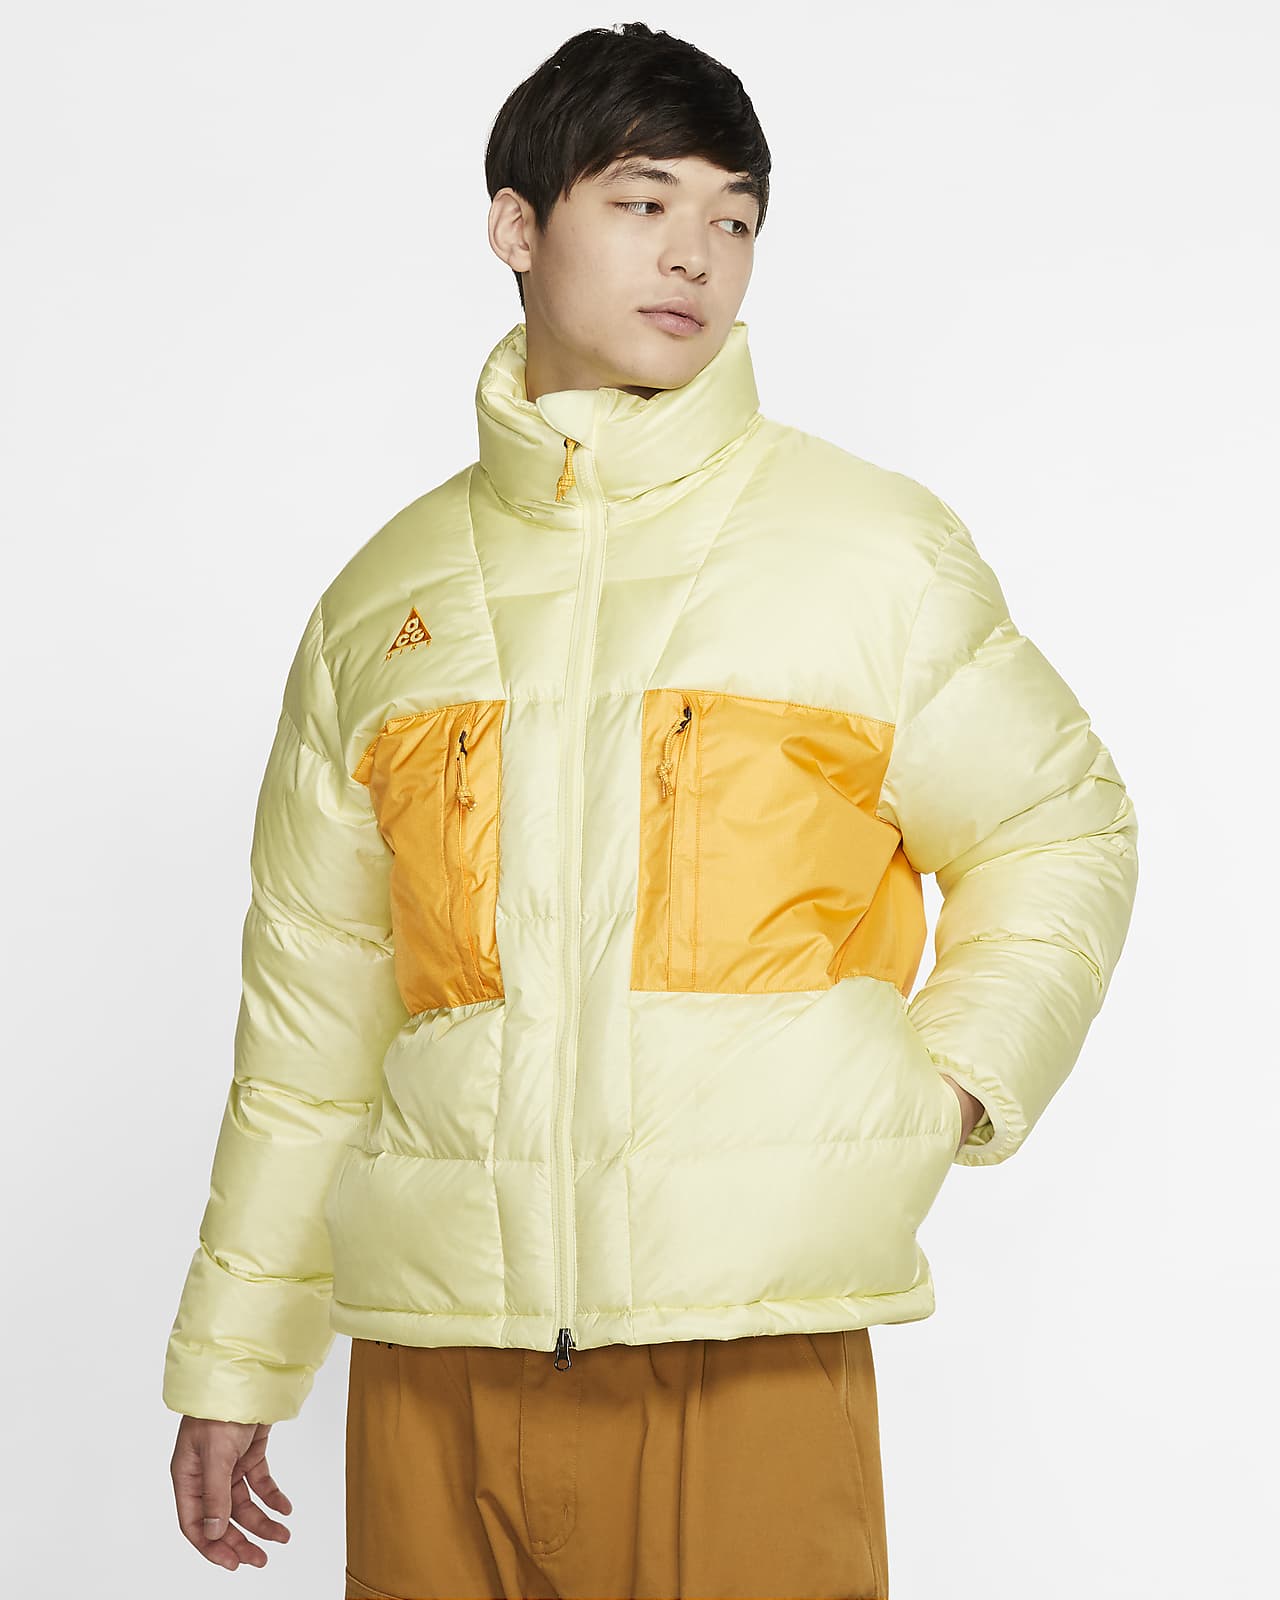 acg yellow jacket